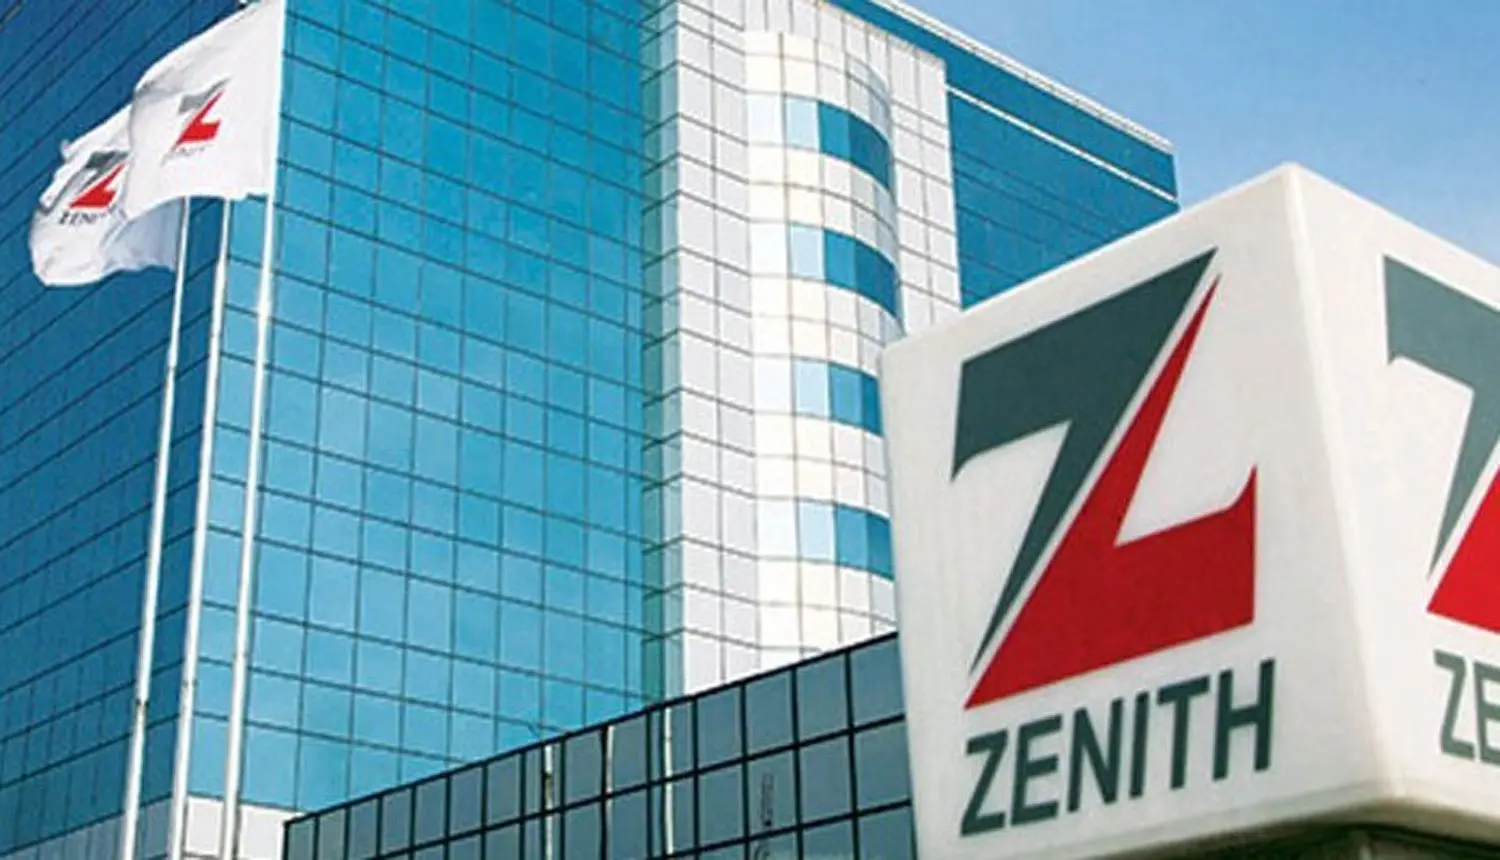 Bank Terkuat ke-2 Di Nigeria adalah Zenith